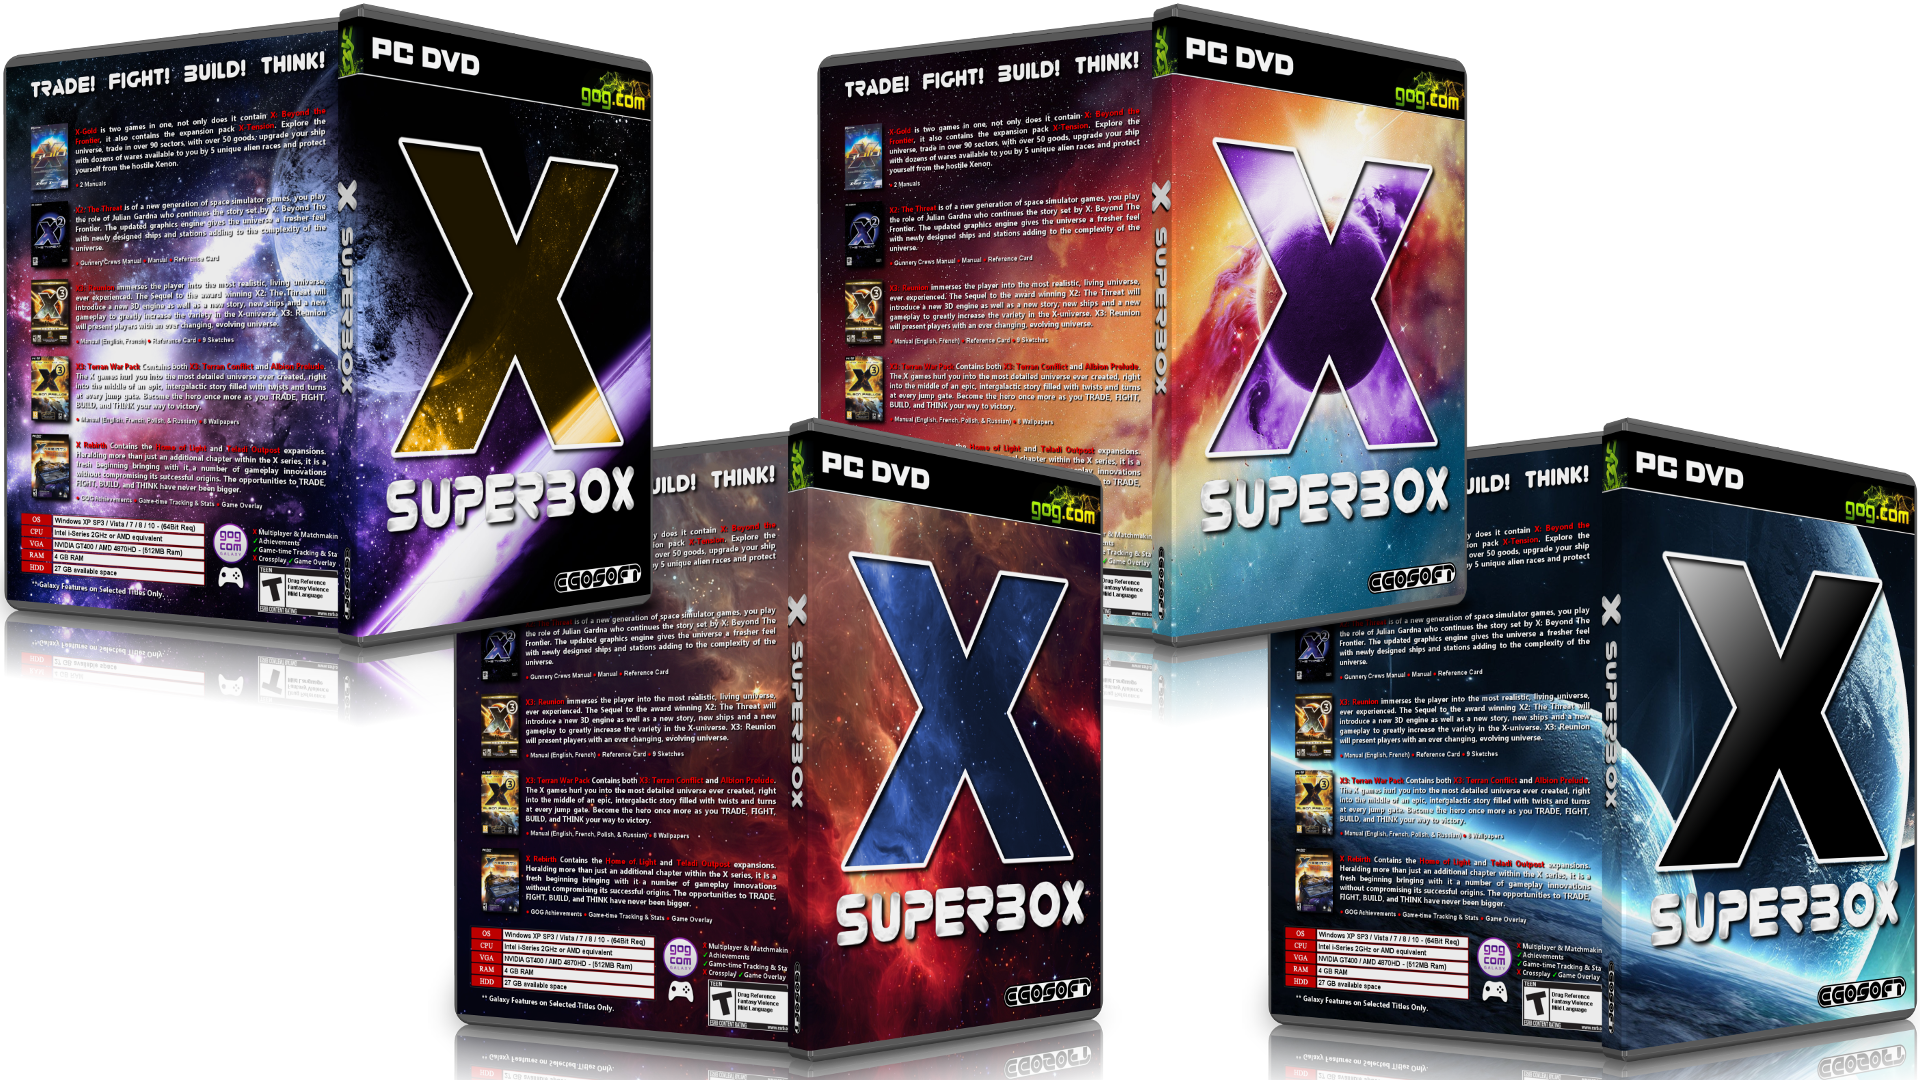 X Superbox